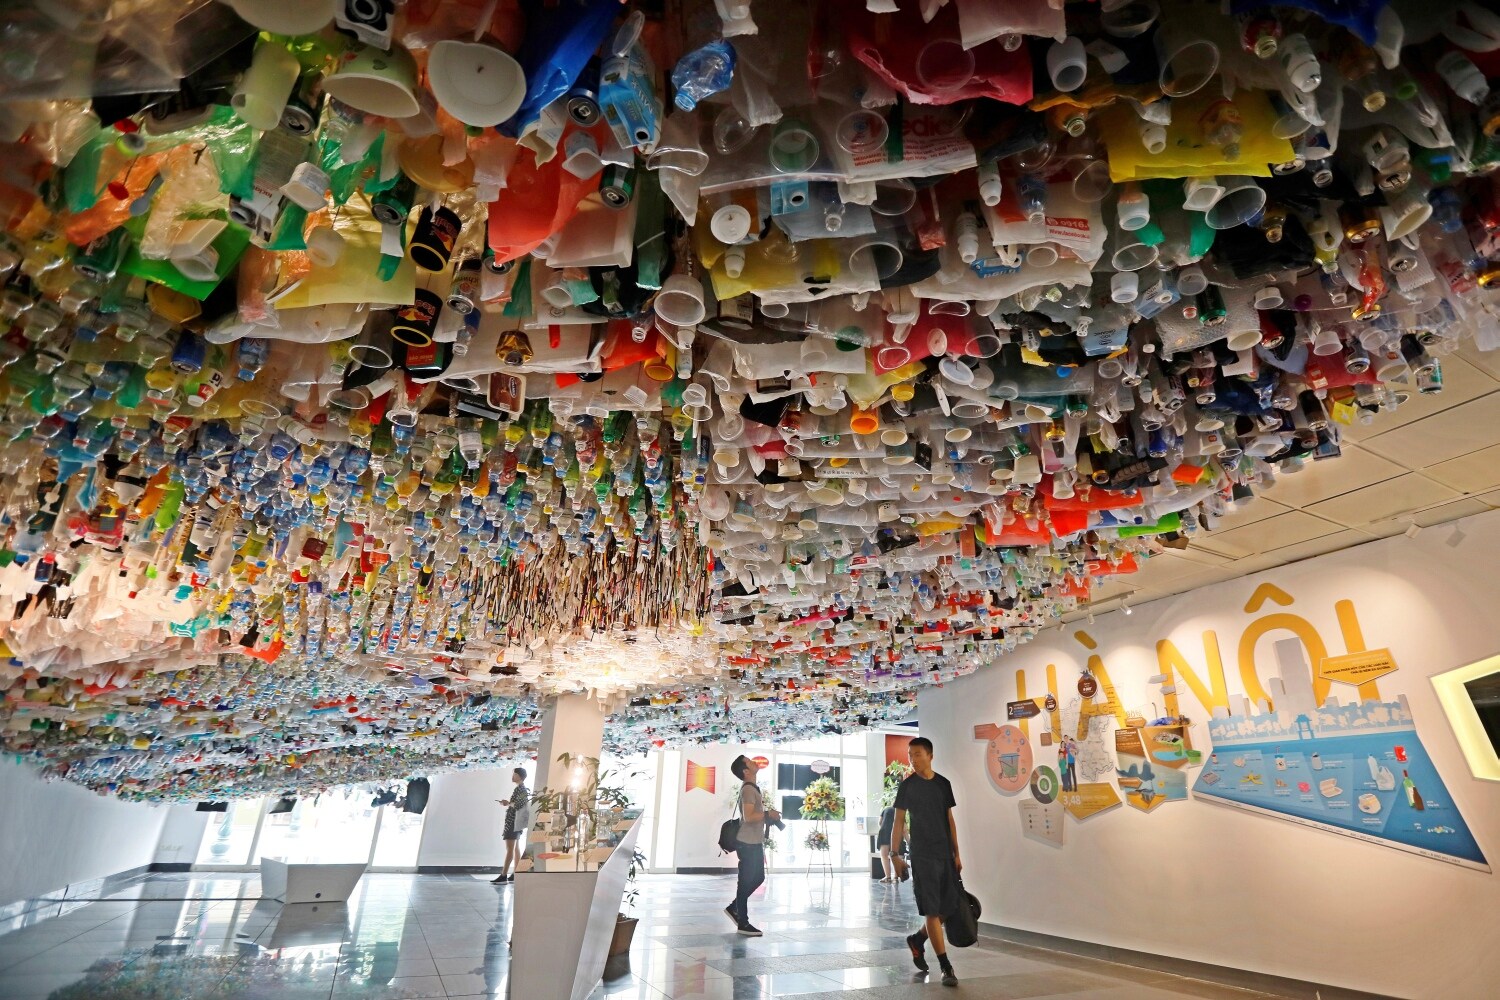 Varios personas recorren la exposición "Reduce la basura" en el Centro Cultural Francés de Hanoi (Vietnam). La muestra reúne piezas creadas con objetos desechables de plástico.